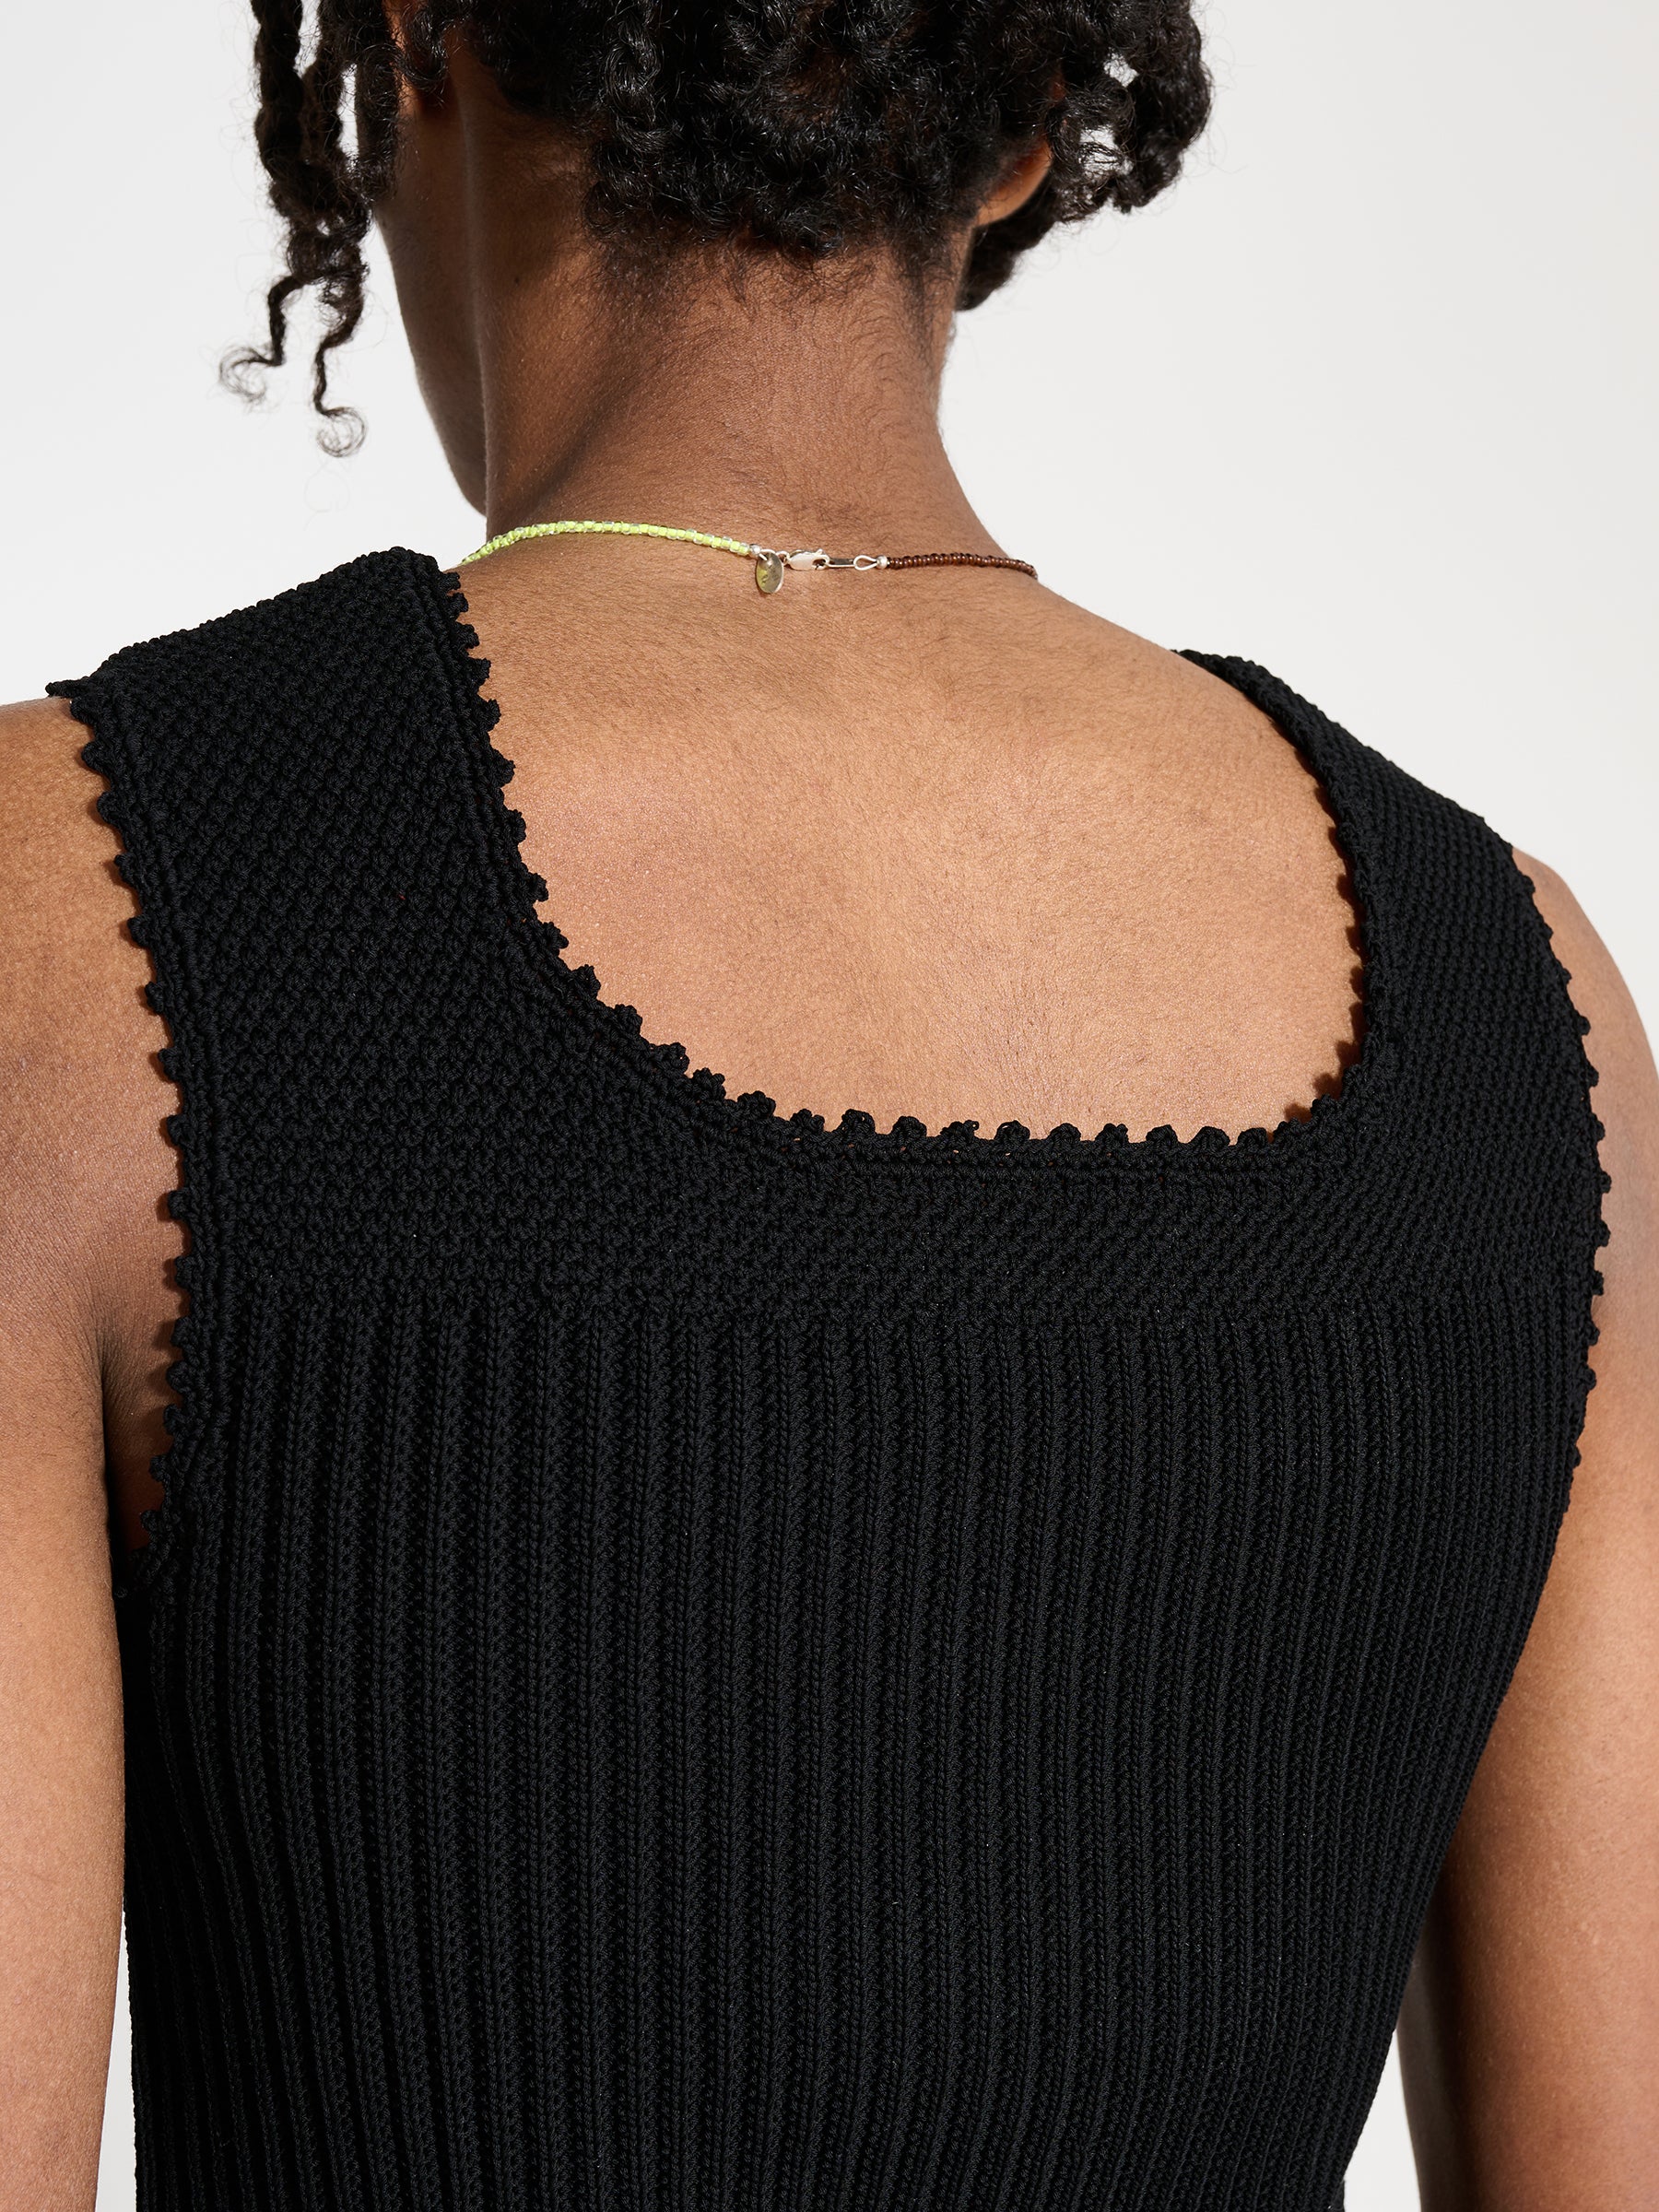 Martine Rose Crochet Vest Black